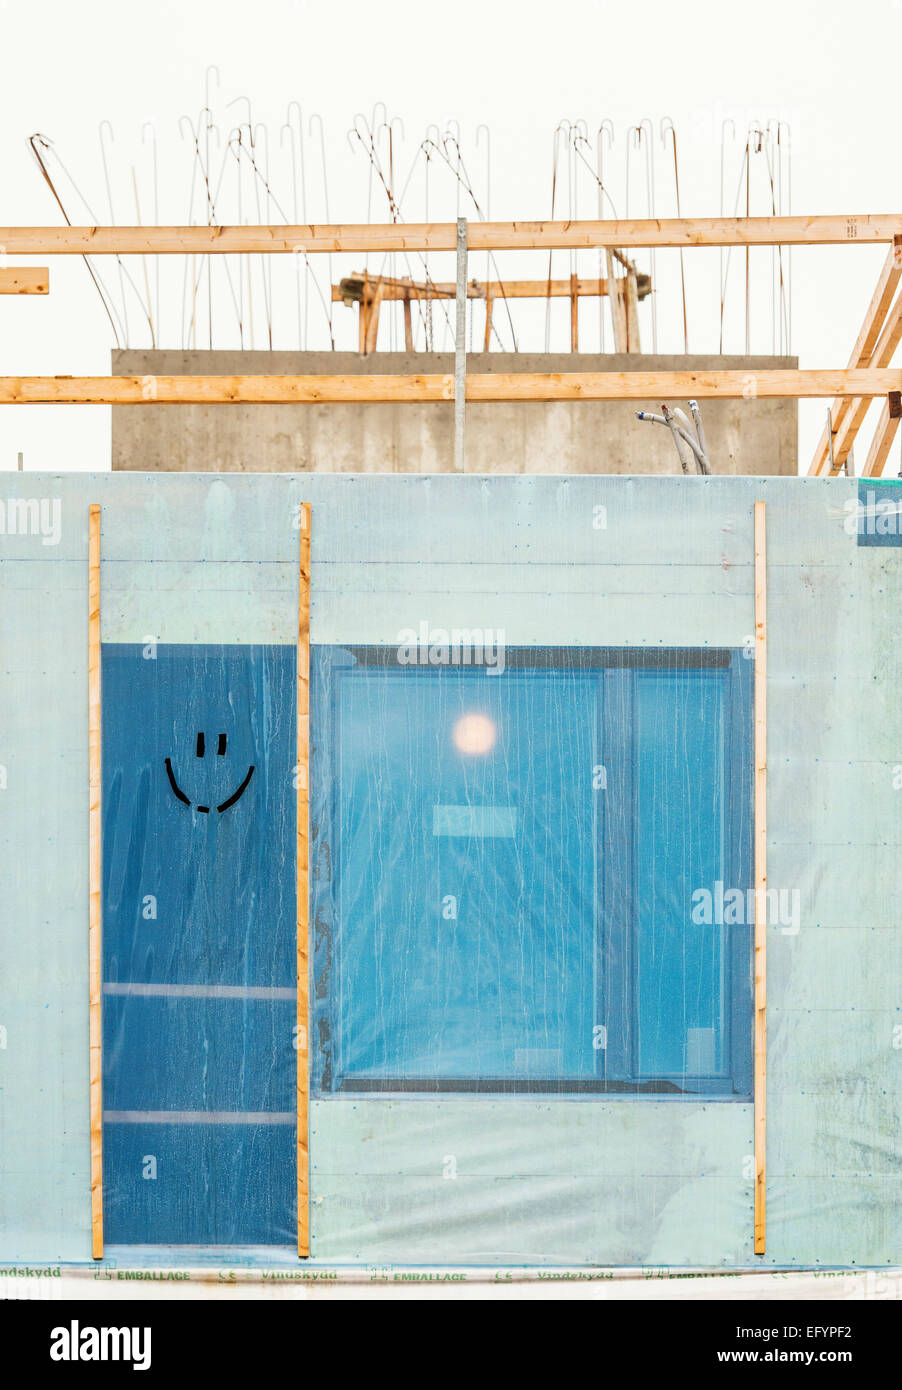 La faccina sorridente viene tagliata in plastica sul sito in costruzione a Stoccolma, Svezia. Foto Stock